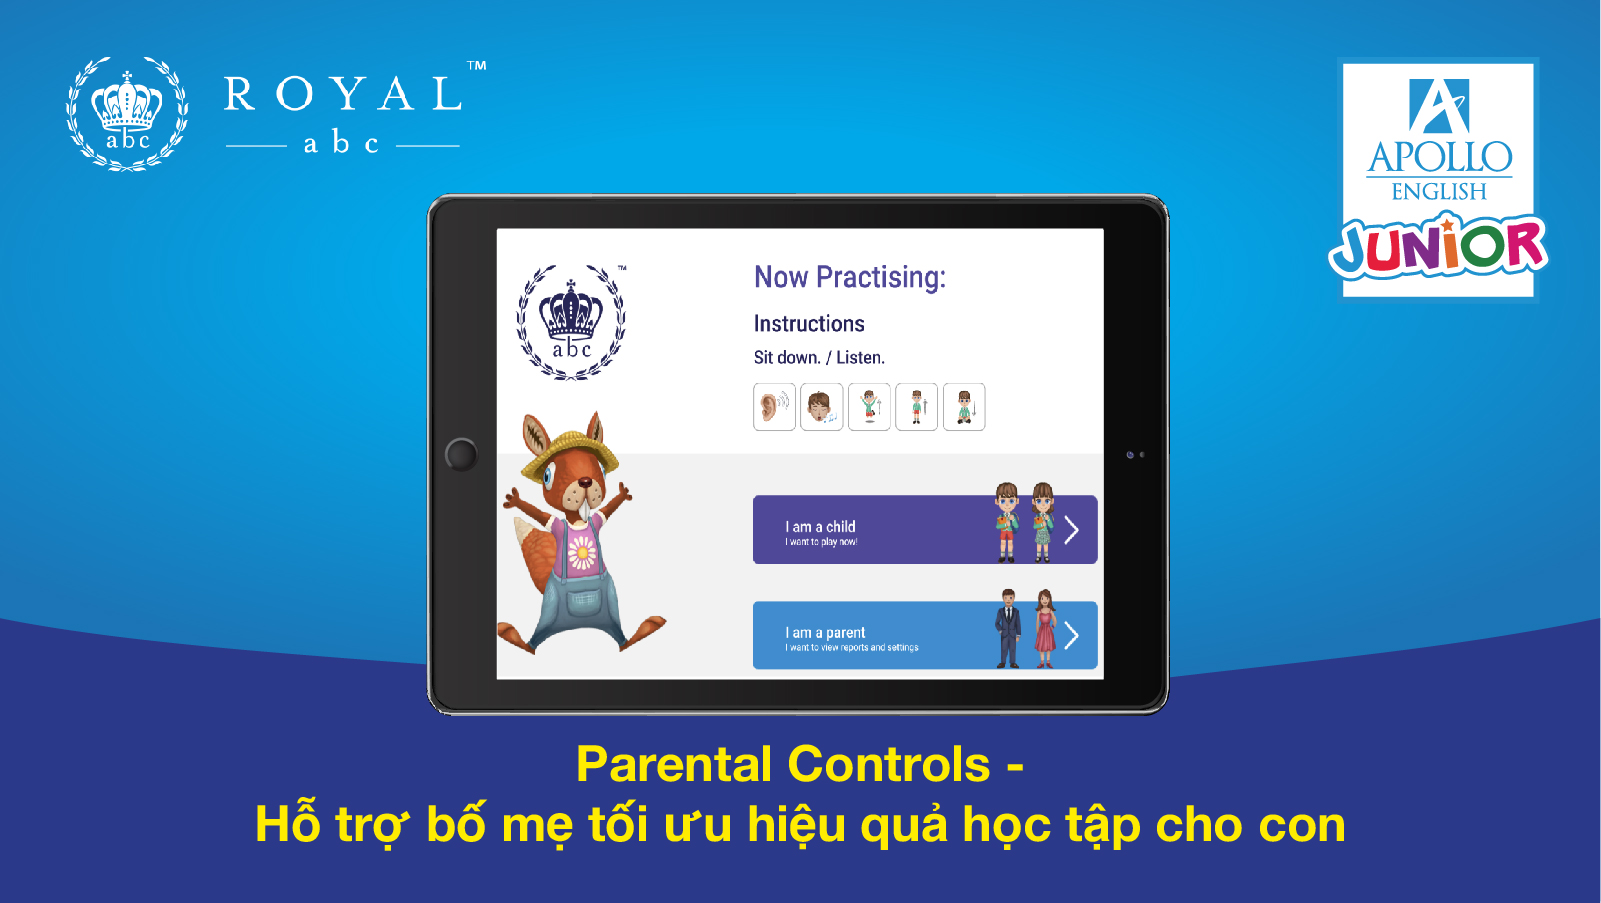 Parental Controls - Hỗ trợ bố mẹ tối ưu hiệu quả học tập cho con